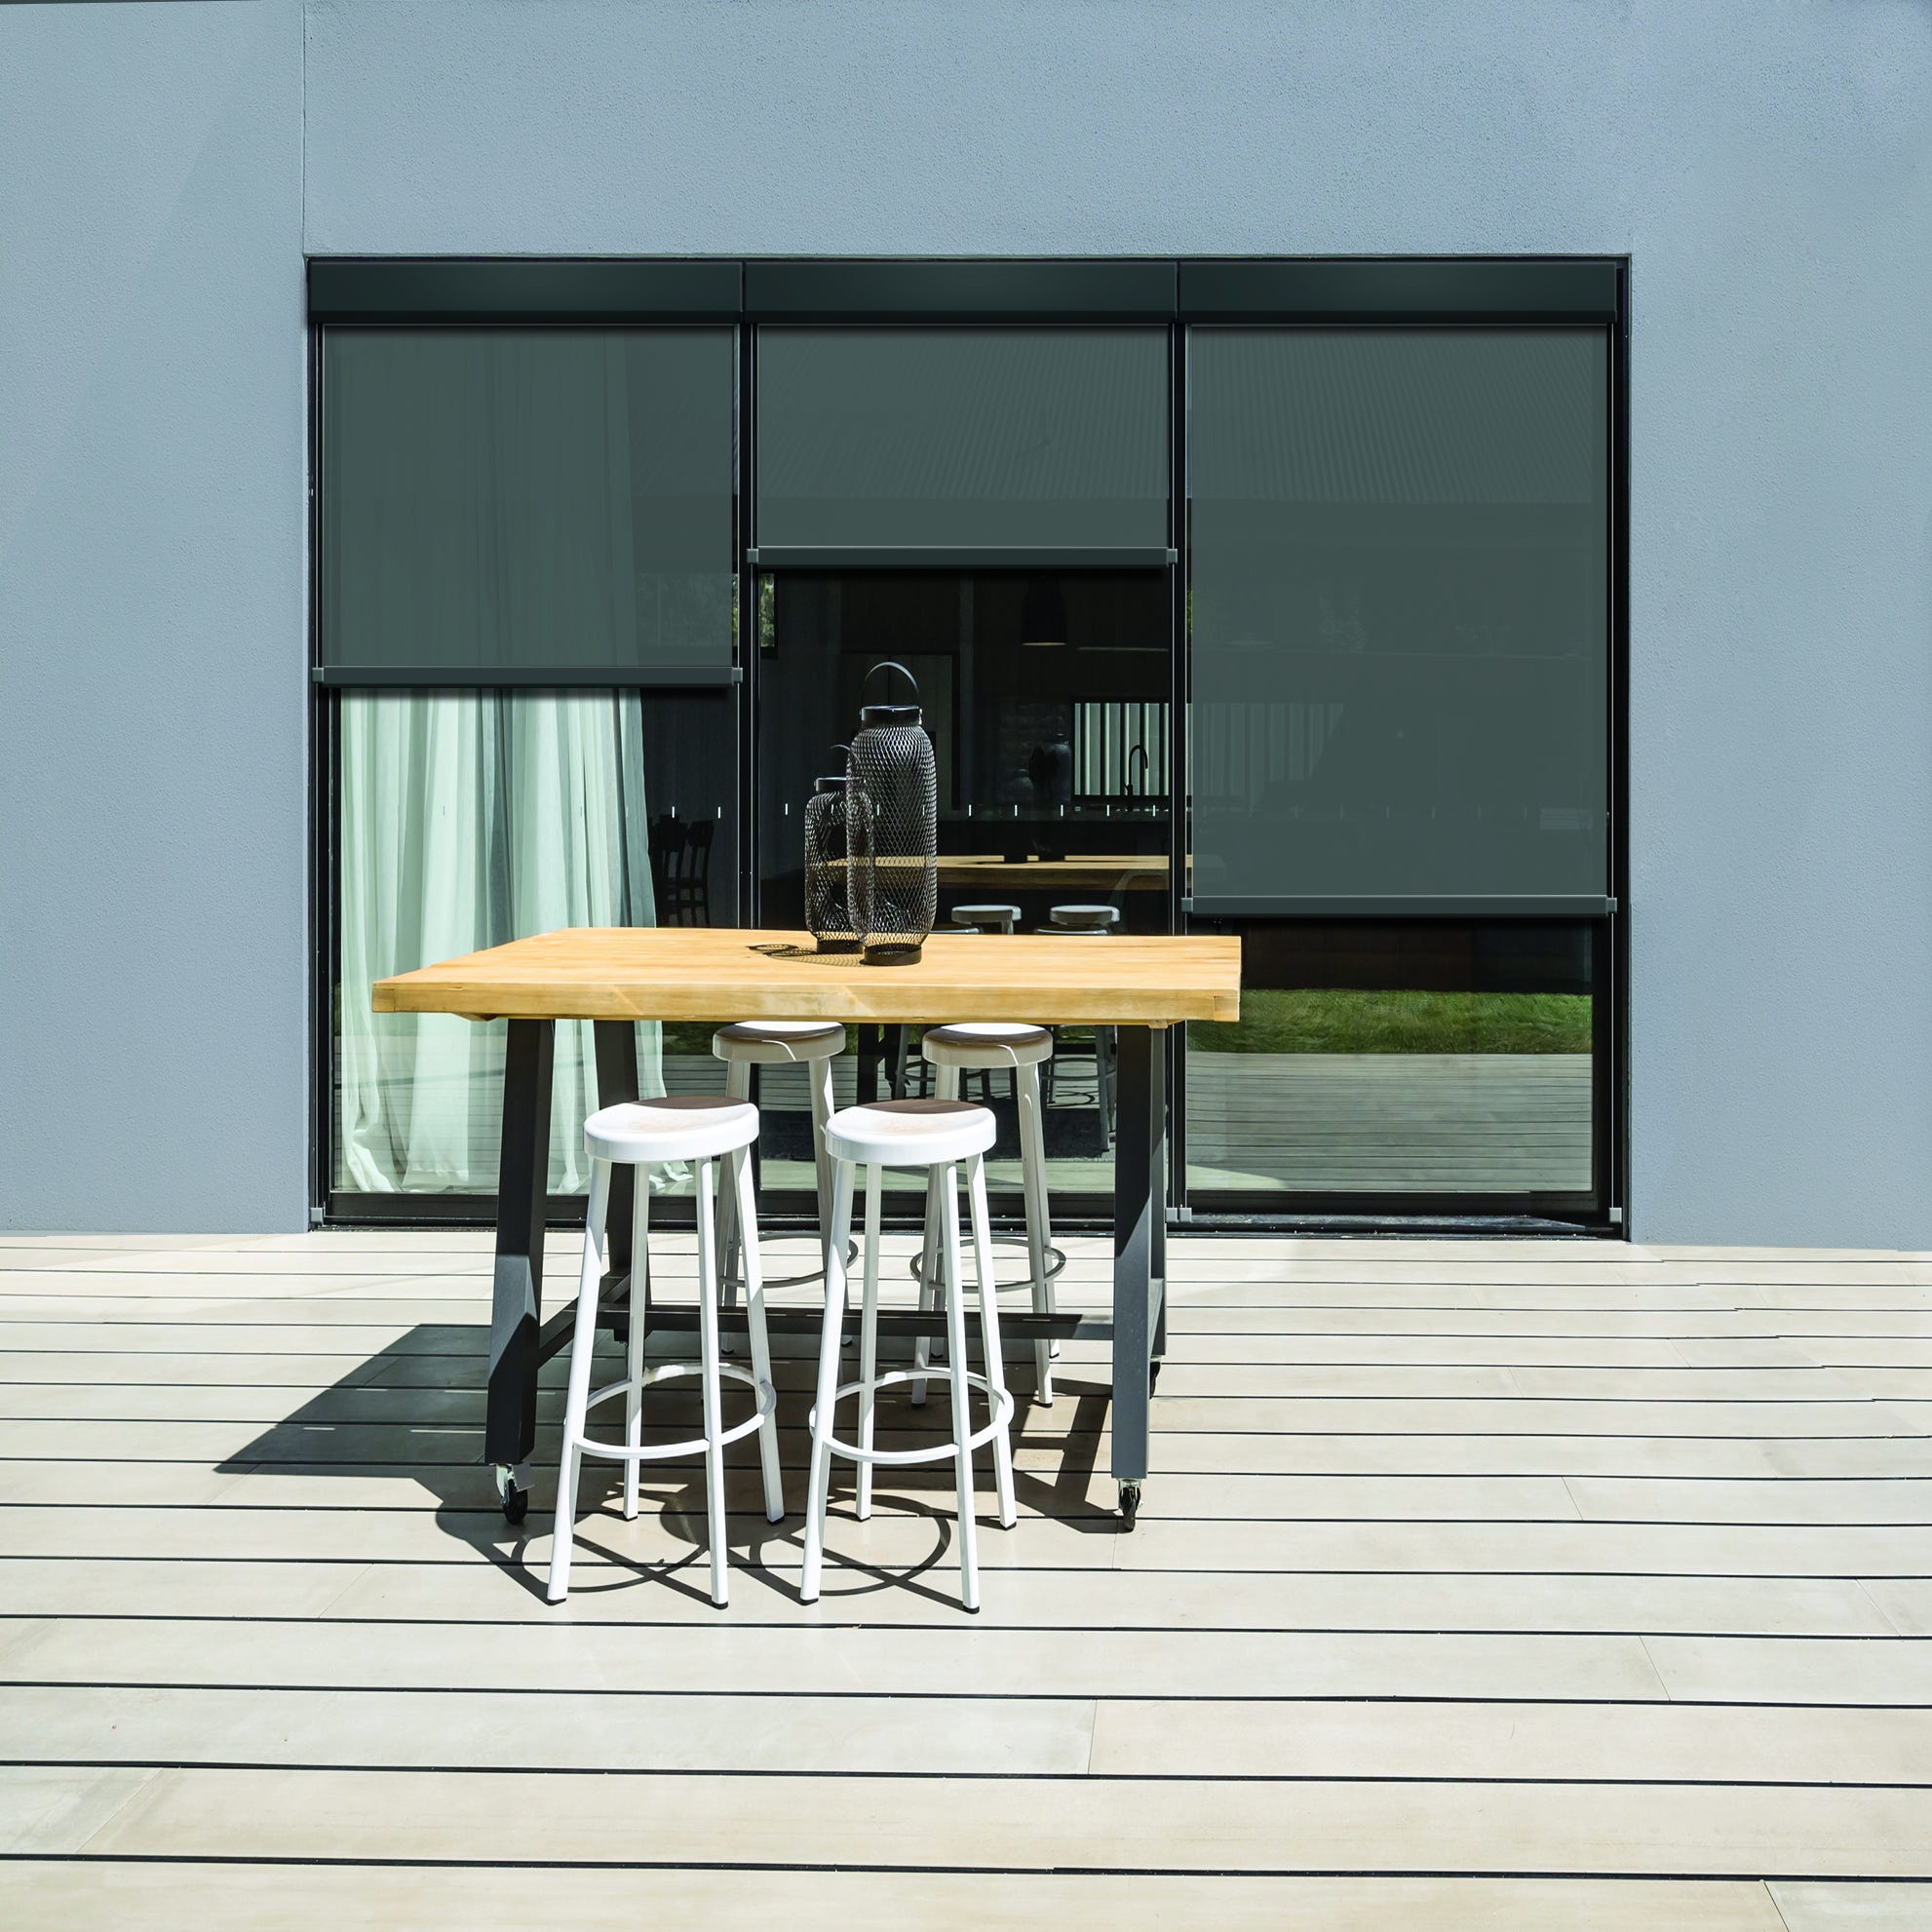 Store vertical enrouleur extérieur pour terrasse ou balcon - Blanc laqué -  Gris anthracite - 1,4 x 2,5 m